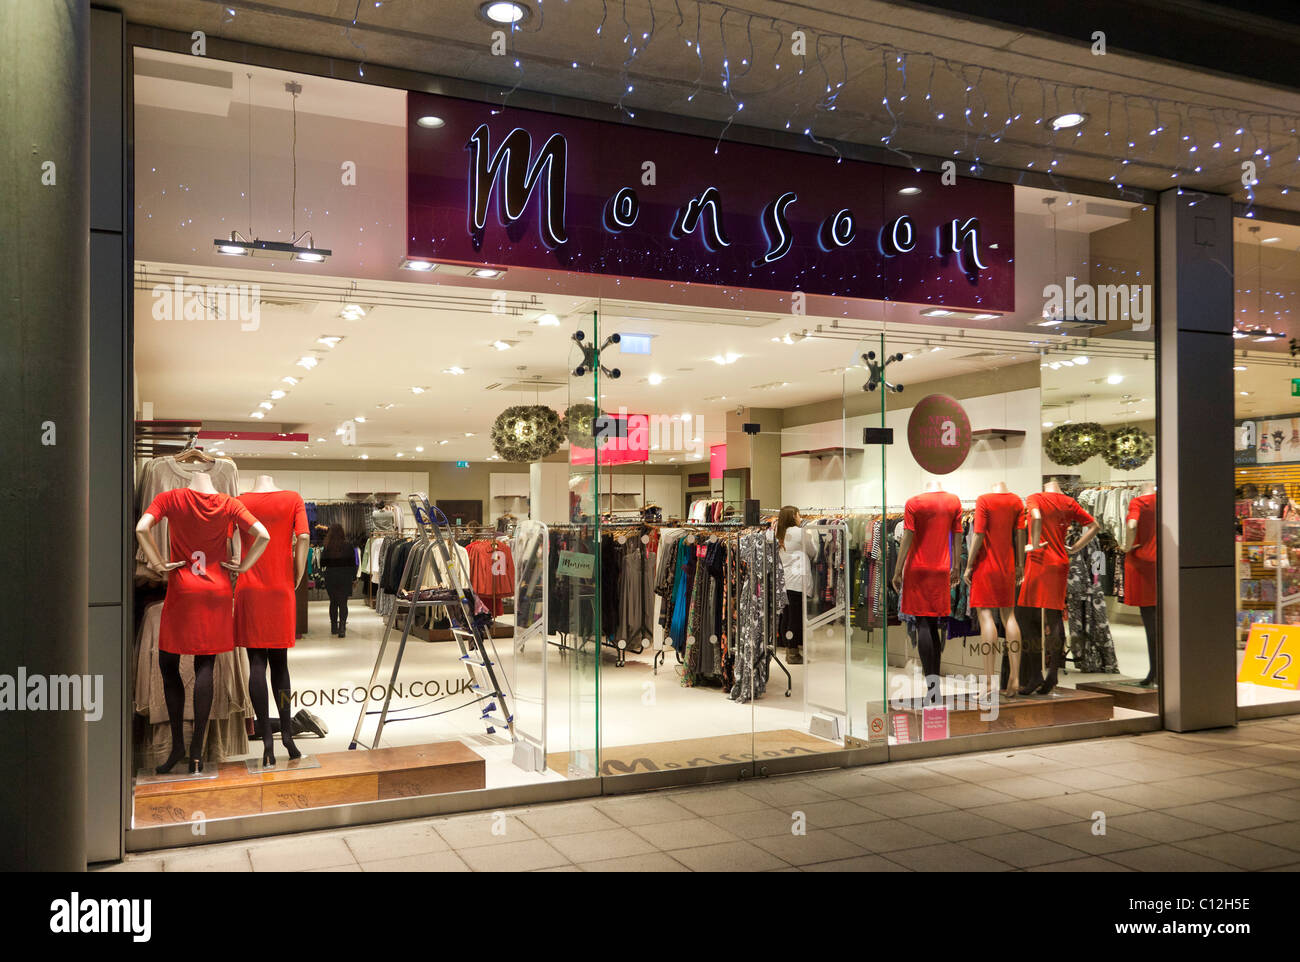 Monsoon fashion clothing shop, UK Stock Photo